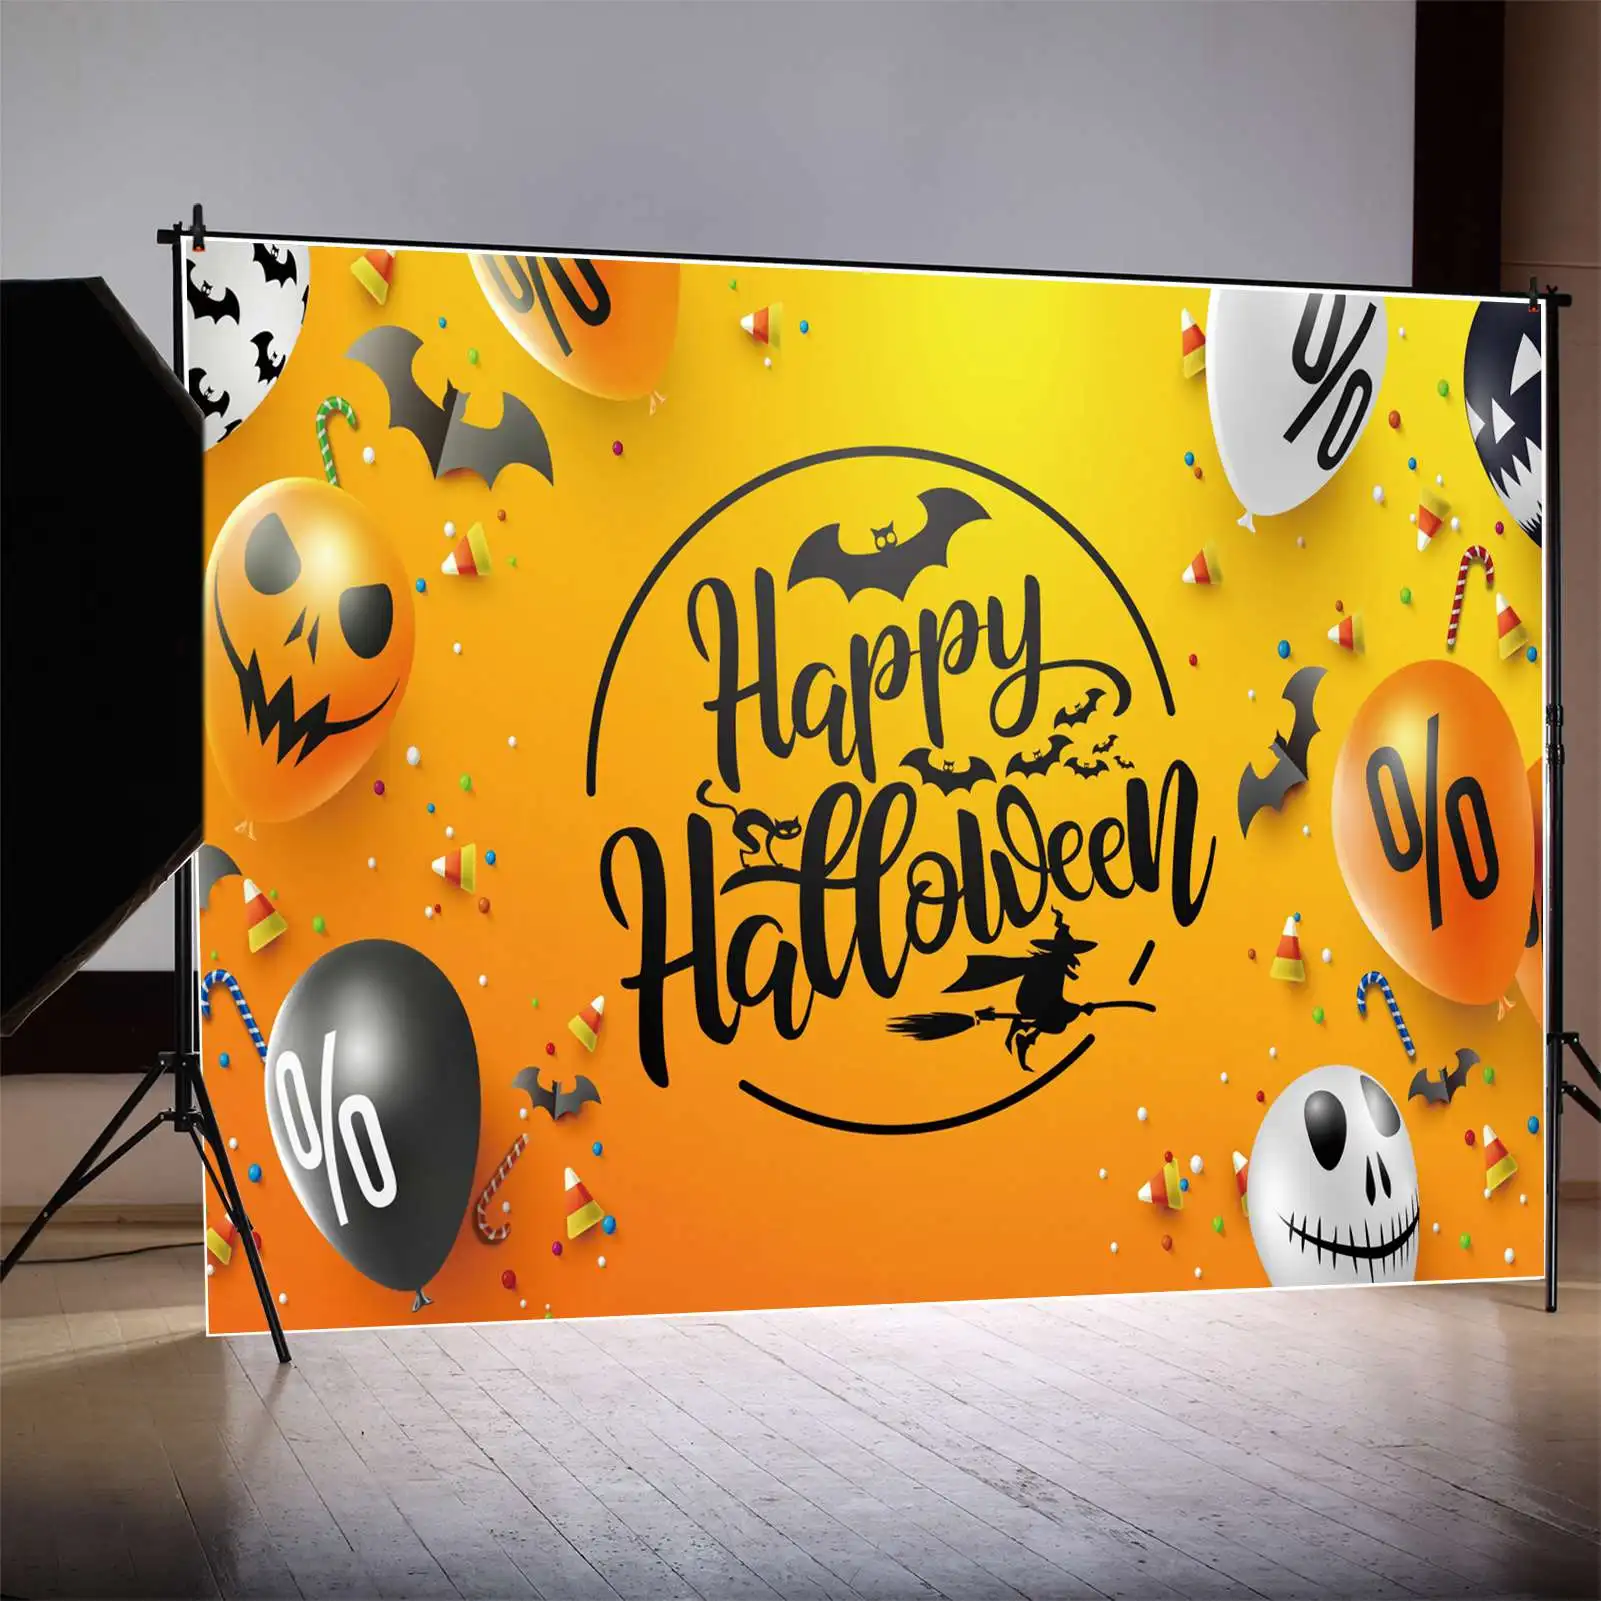 

Фон MOON.QG для Счастливого Хэллоуина, баннер, плакат, воздушный шар, реквизит, фон, Череп, тыква, лампа, фокус или лечение, фотобудка